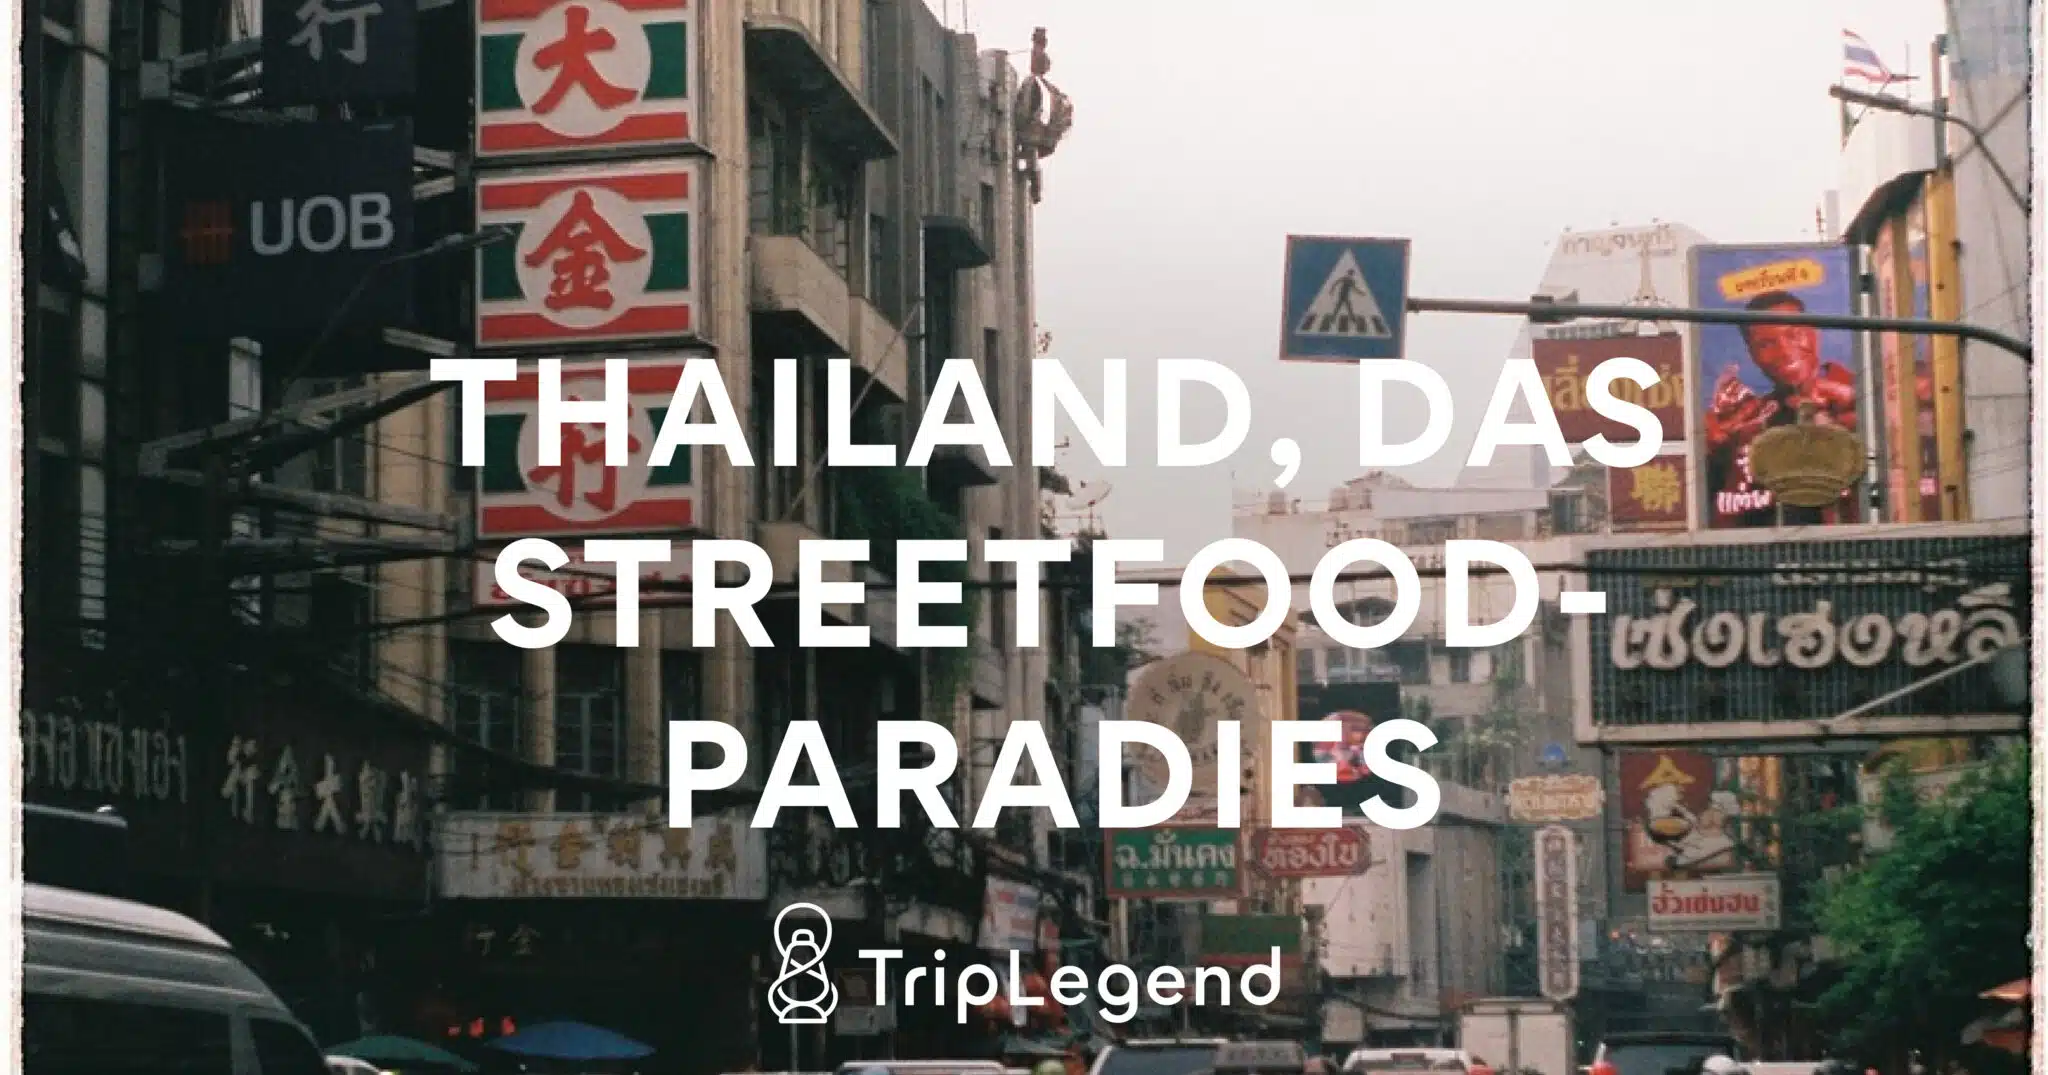 Thailand Gademadsparadiset Skaleret.jpg